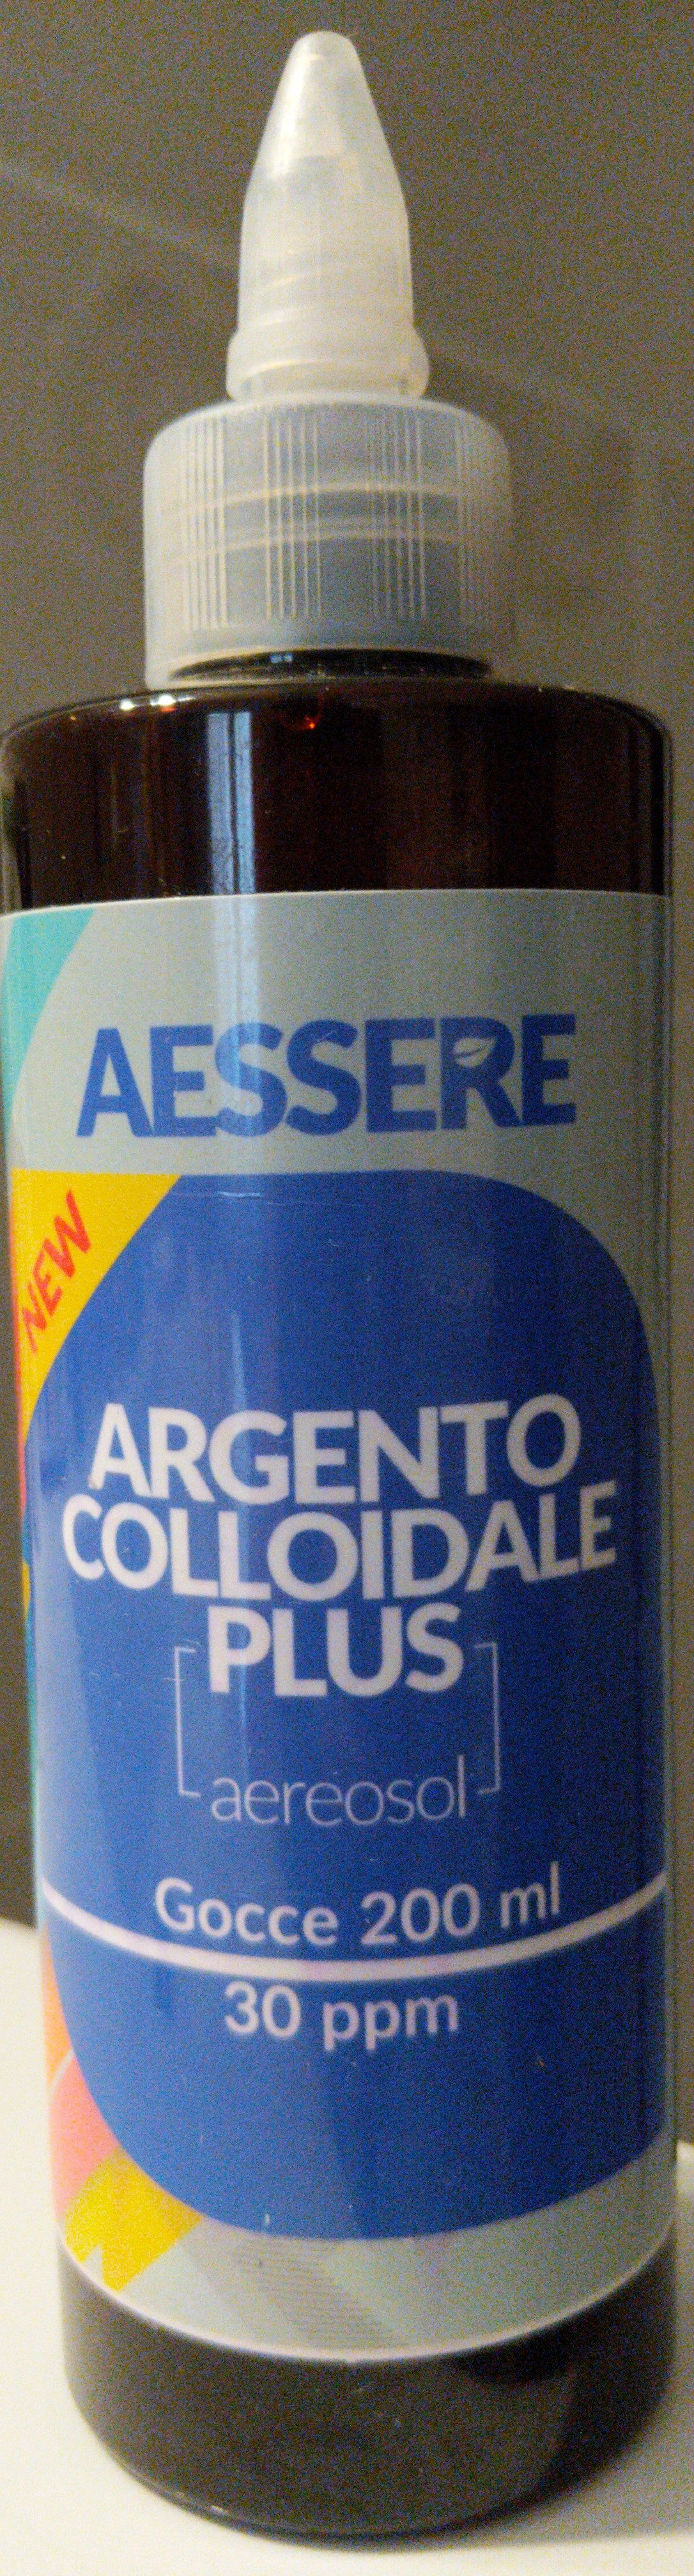 Argento Colloidale Plus aerosol - Produit - it